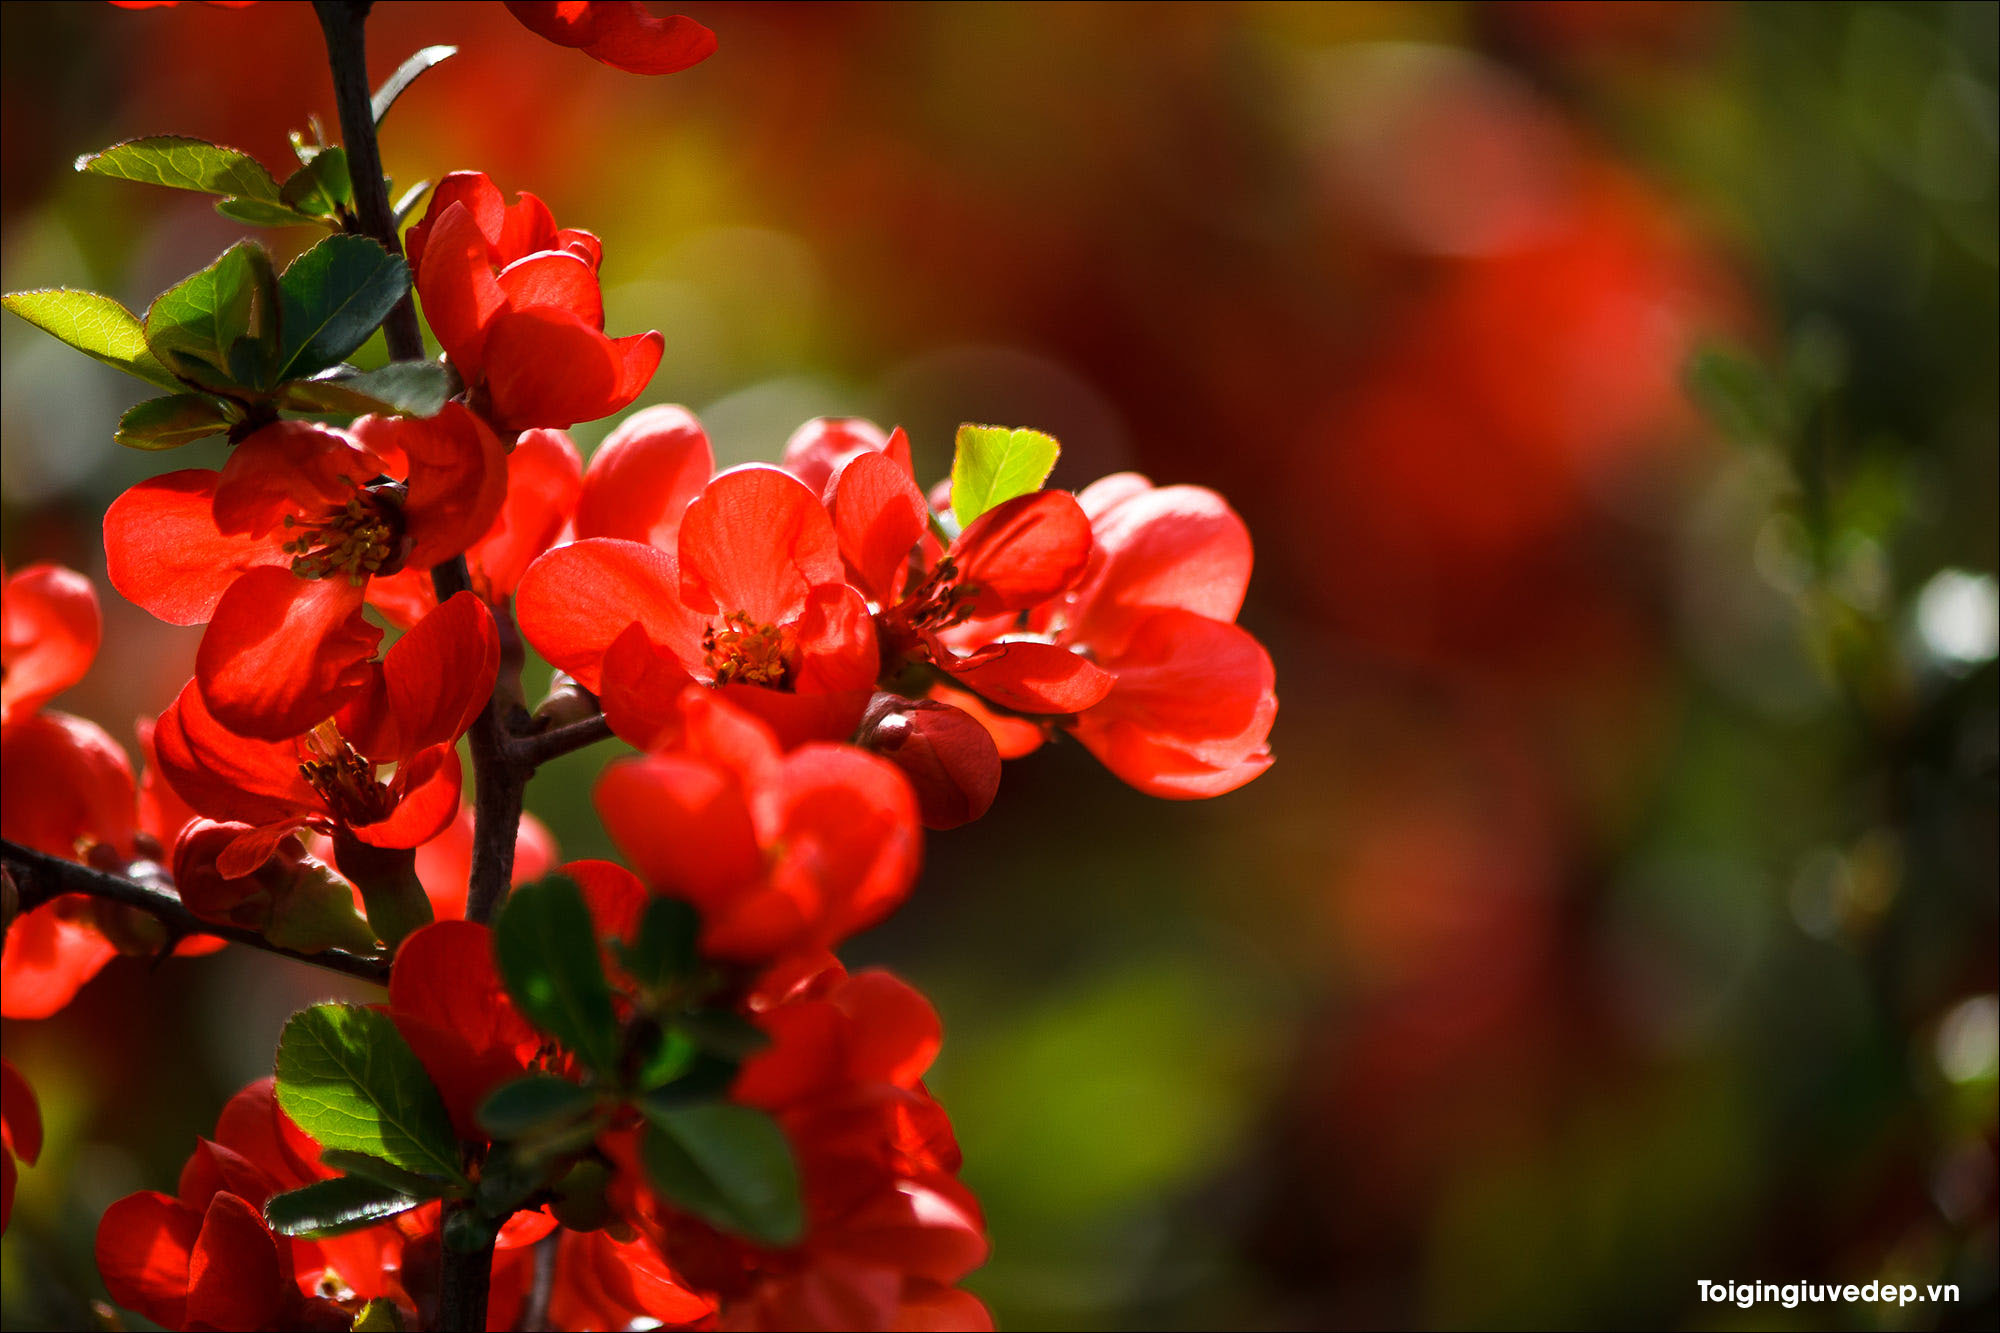 Hình ảnh miễn phí Hoa sen đỏ làm vườn thiên nhiên cánh hoa cây hoa đỏ  Hoa